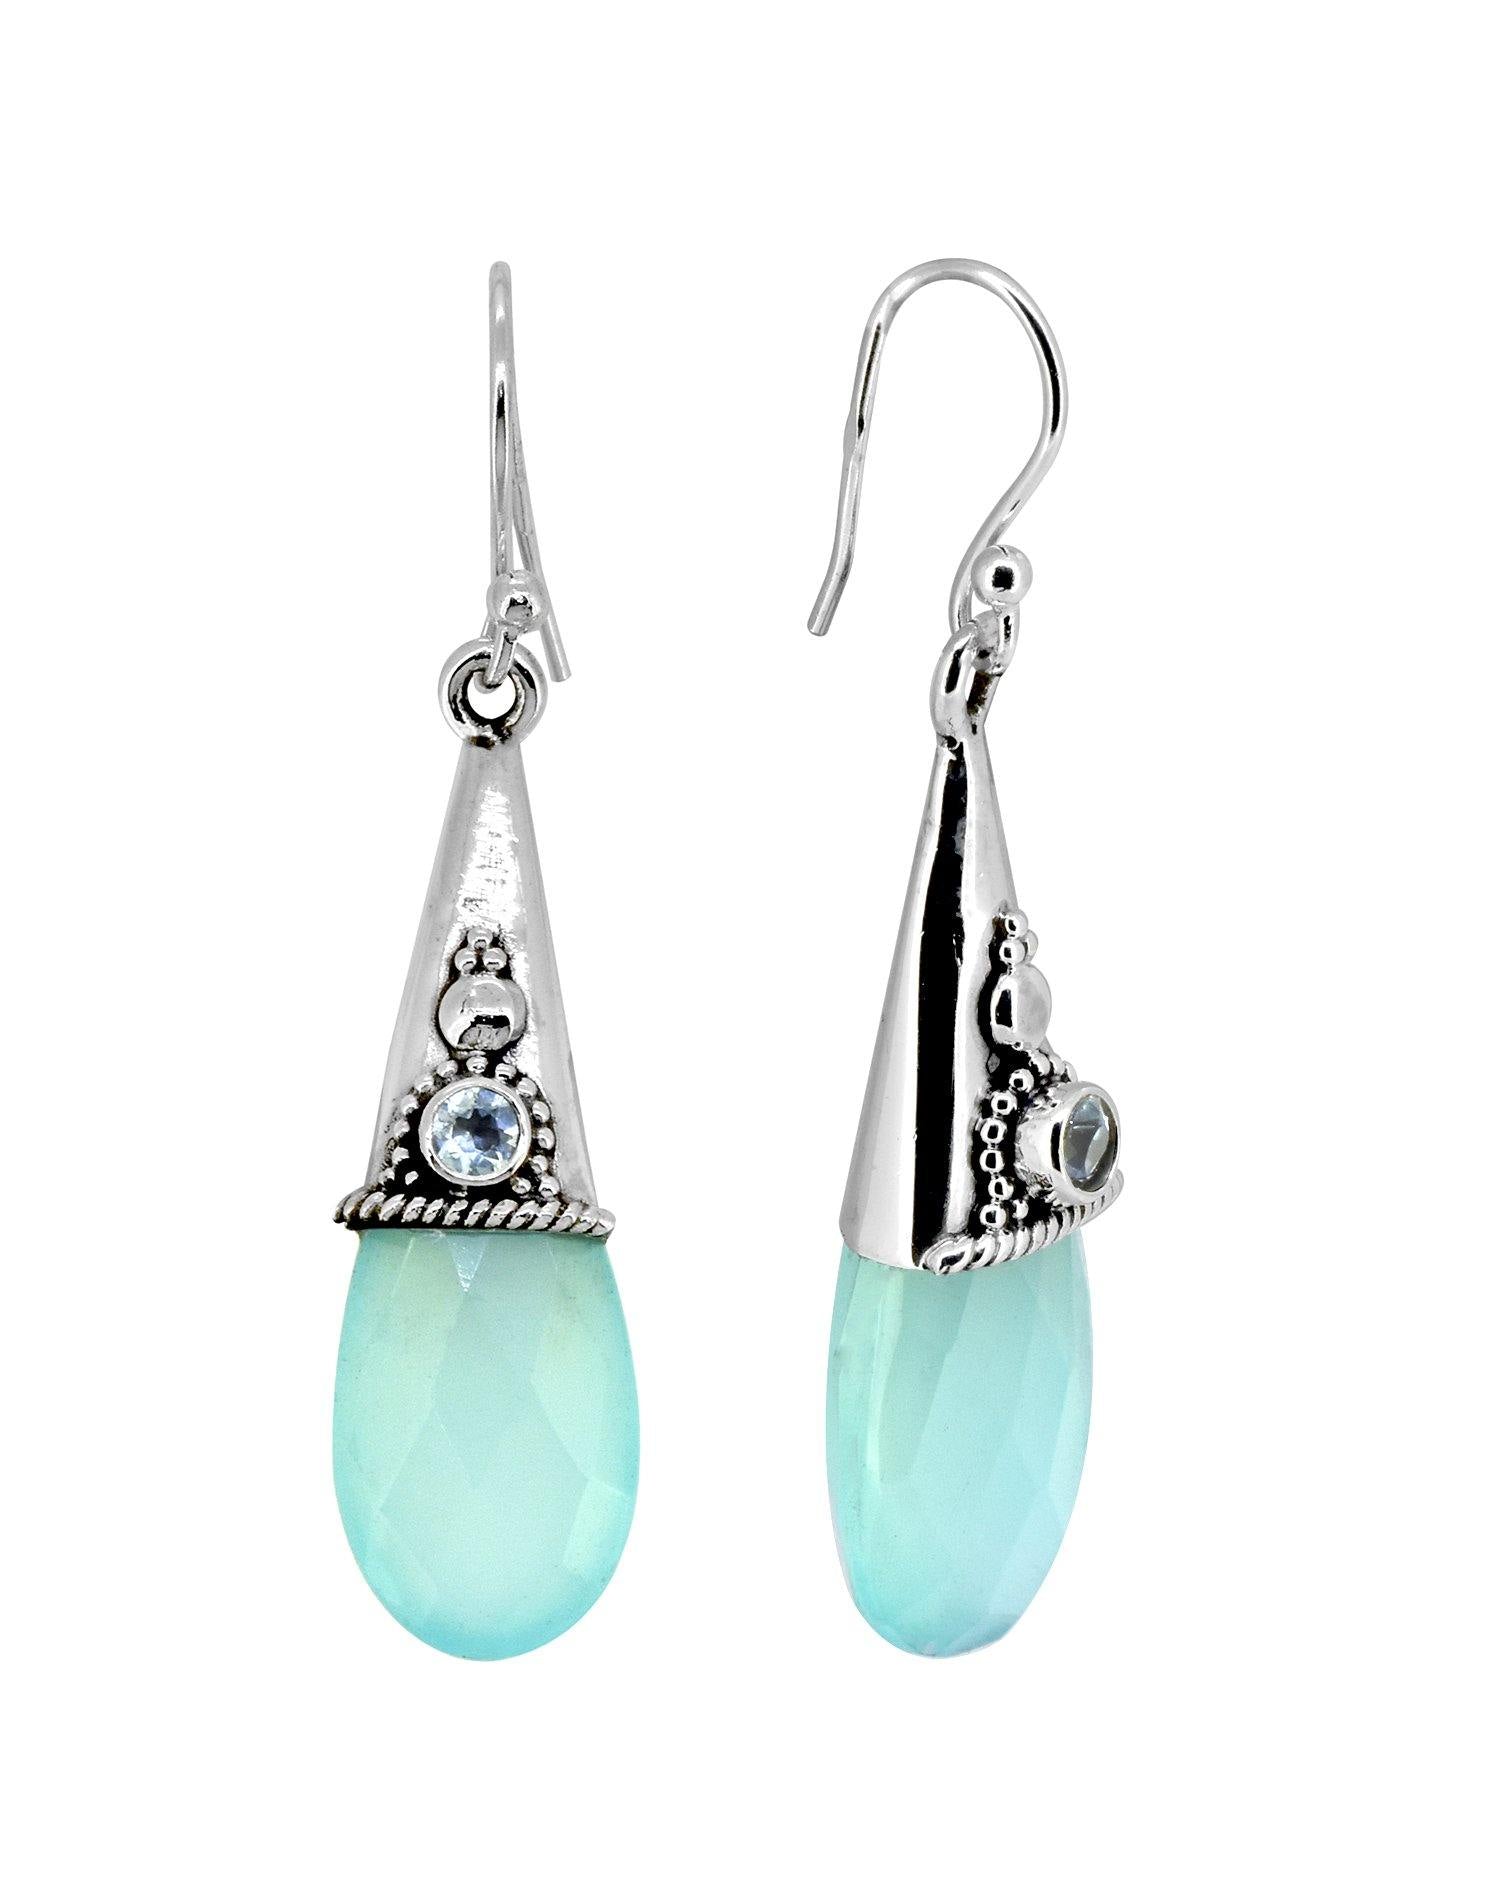 Aqua Chalcedony Solid 925 Sterling Silver Teardrop Dangle Earrings Jewelry - YoTreasure